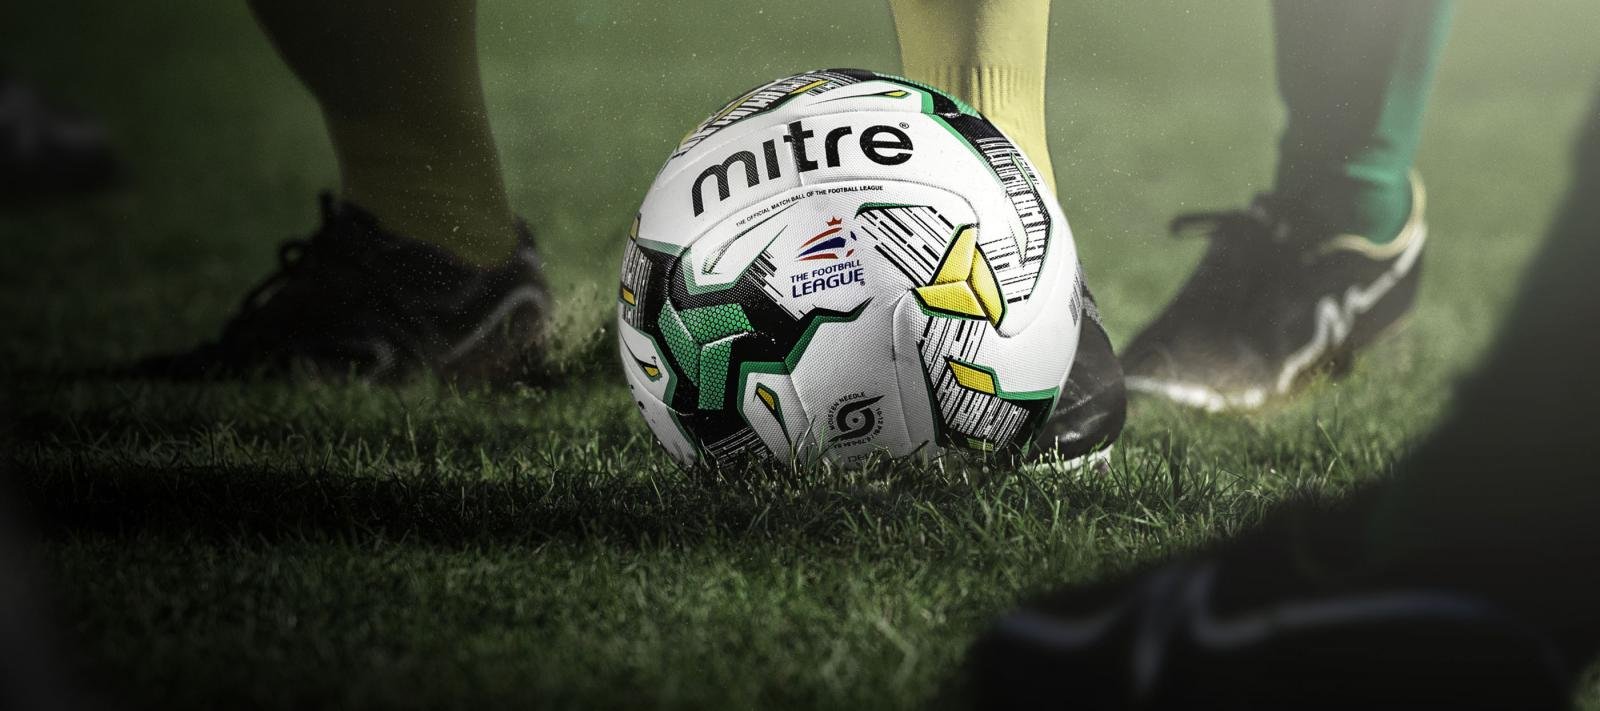 Official 2015/16 Football League Mitre Match Ball